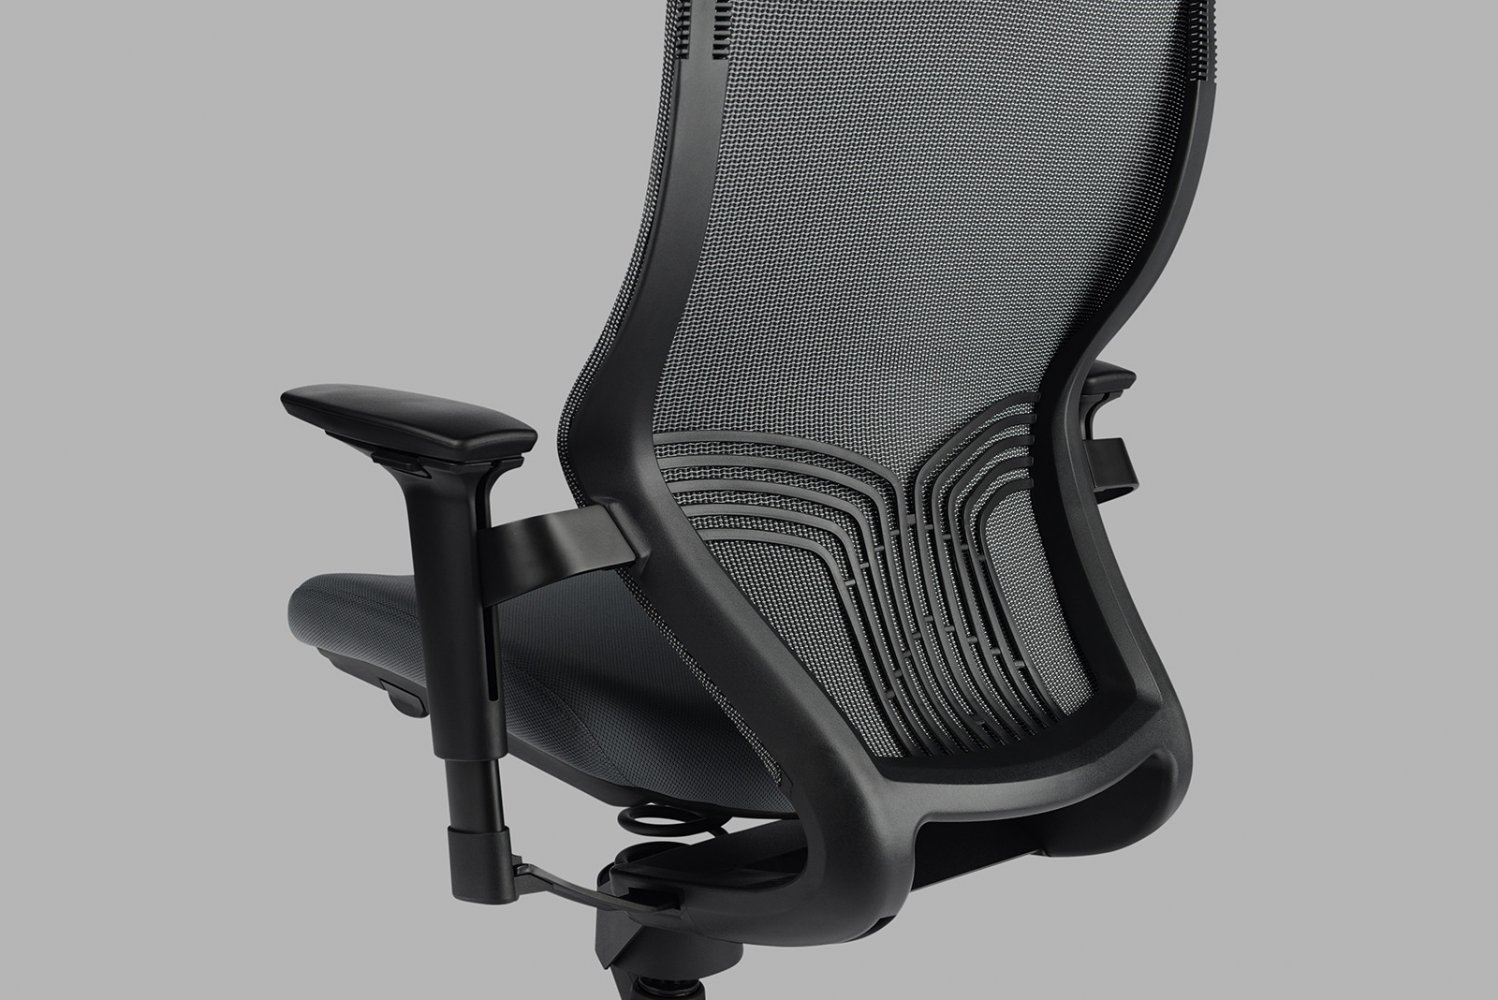 Adaptic Xtreme kancelárska zdravotná stolička